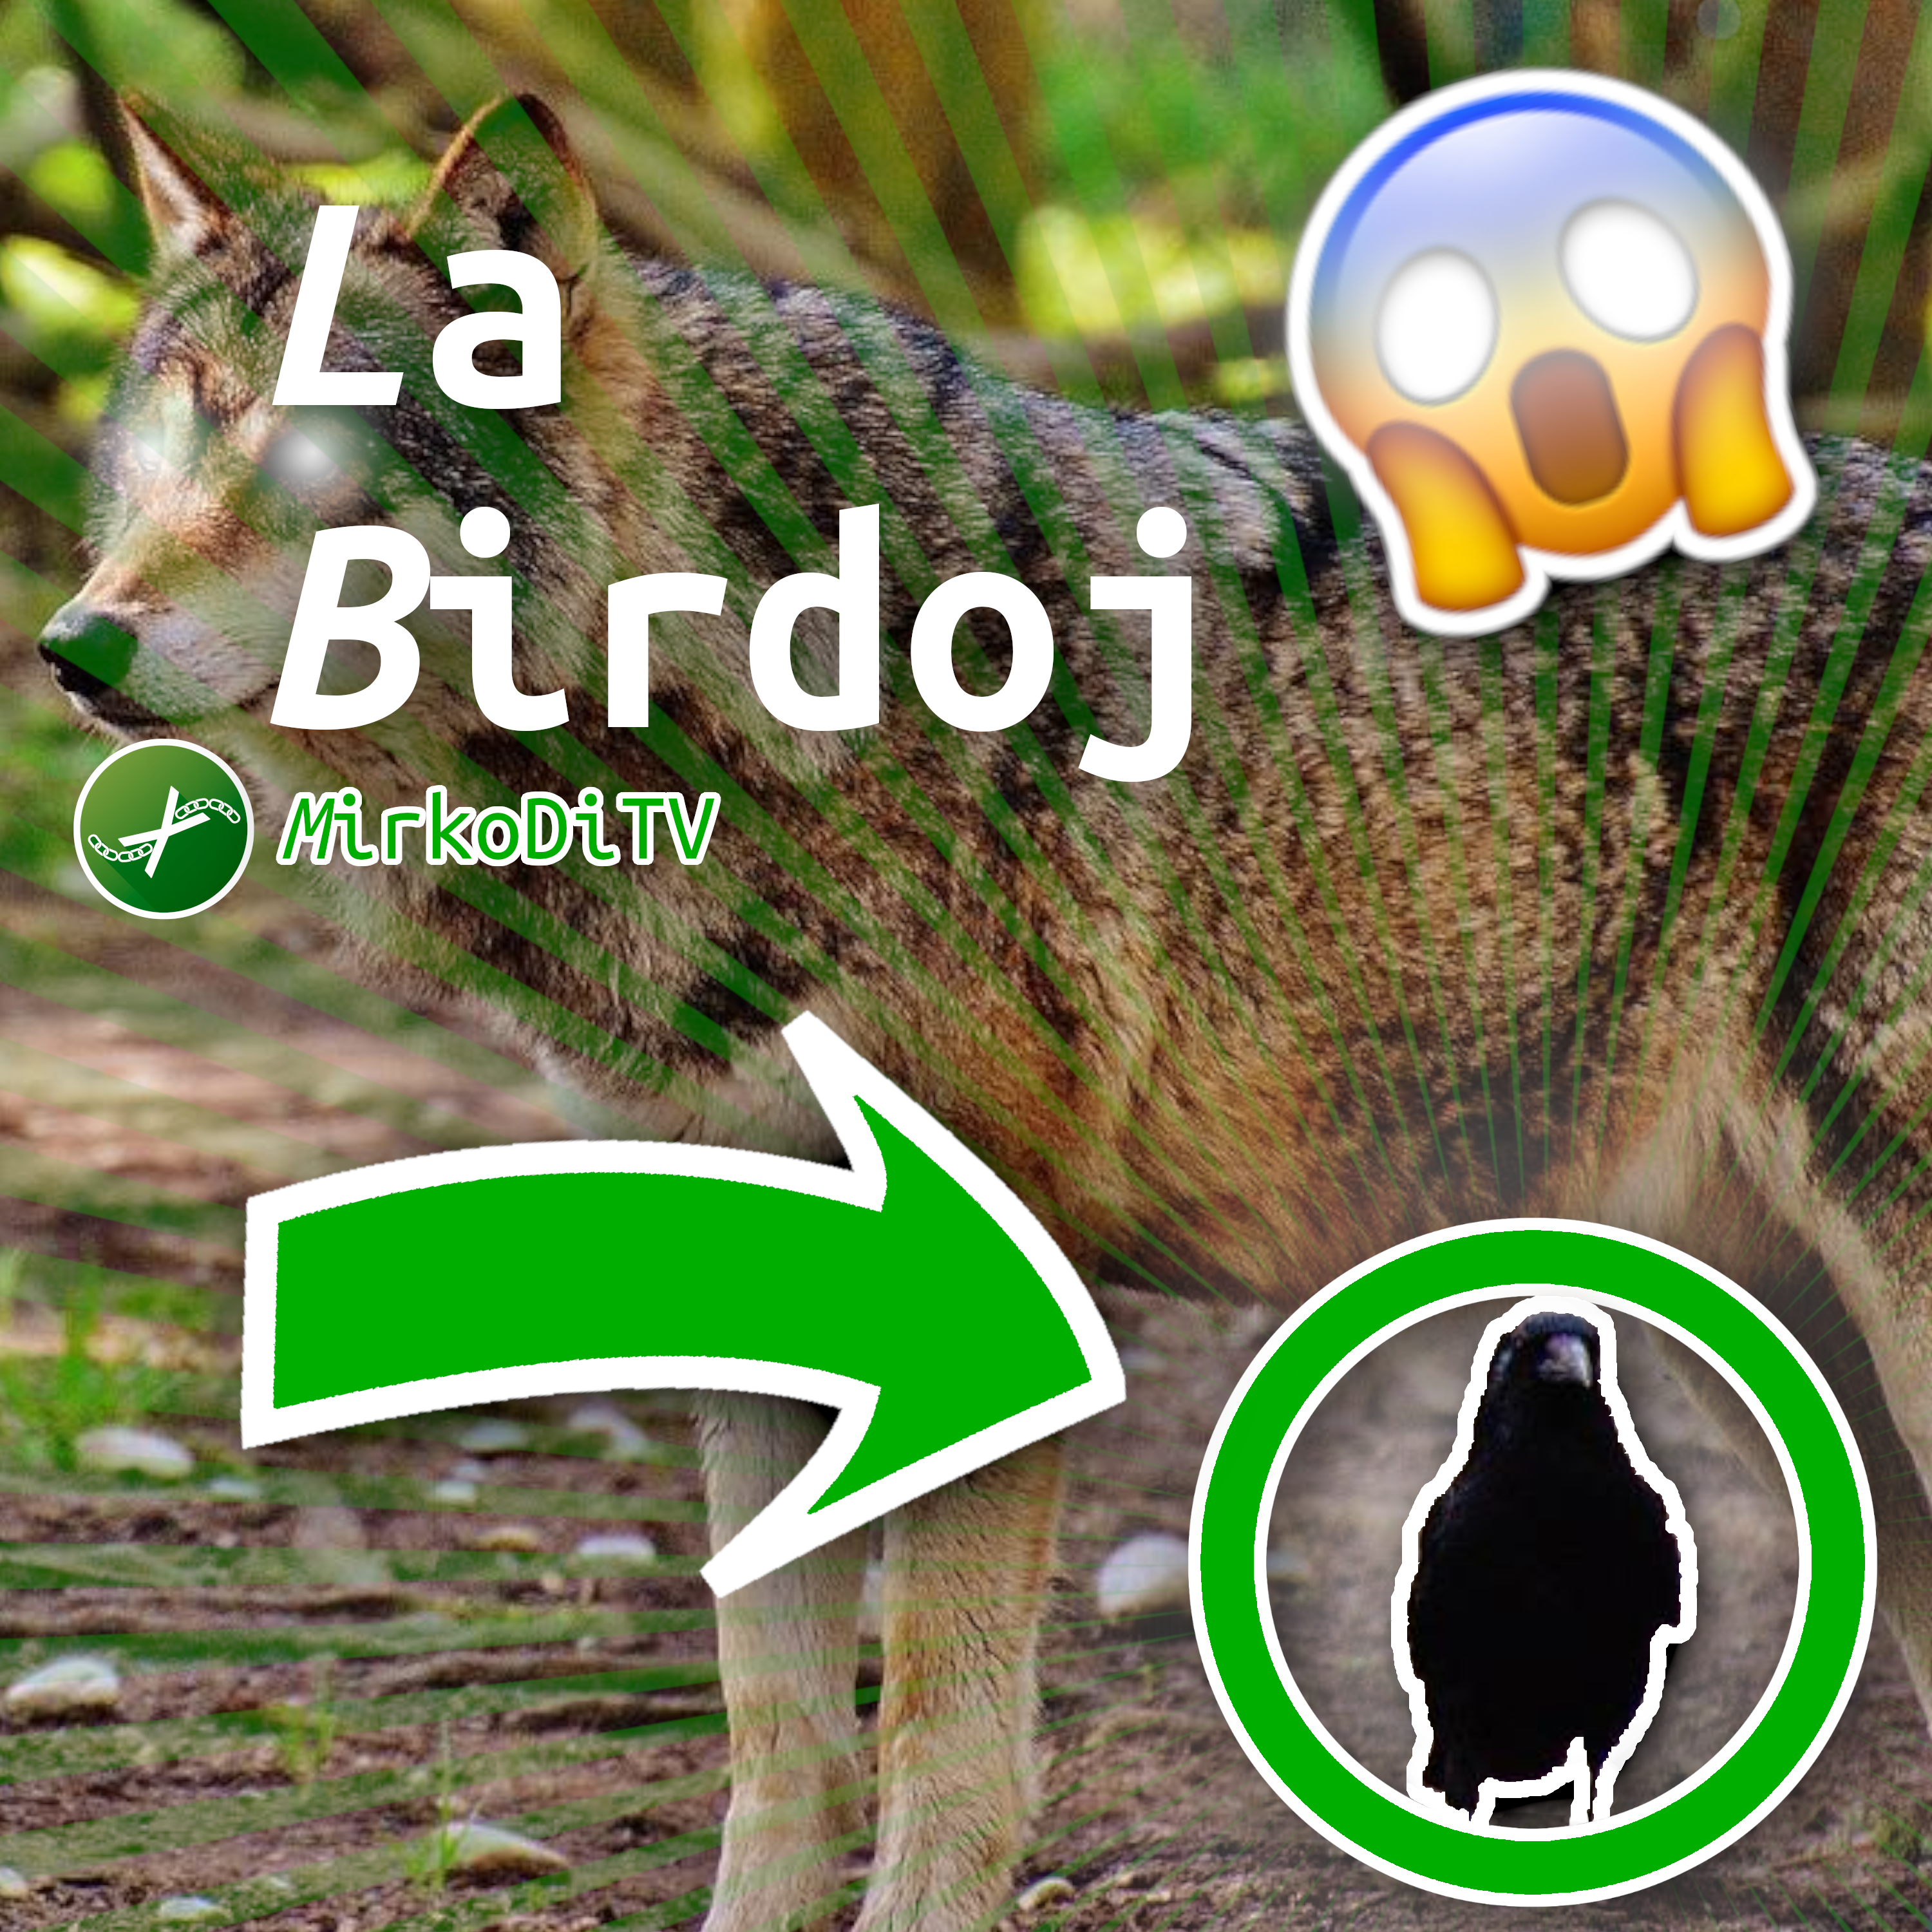 Scritte 'La Birdoj', 'MirkoDiTV' su uno sfondo
                         rappresentante un lupo che ha un uccello, sotto.
                         L'immagine ricorda una copertina <i>clickbait</i>
                         dell'era di YouTube del 2016, e per finire è
                         presente una faccina scioccata.